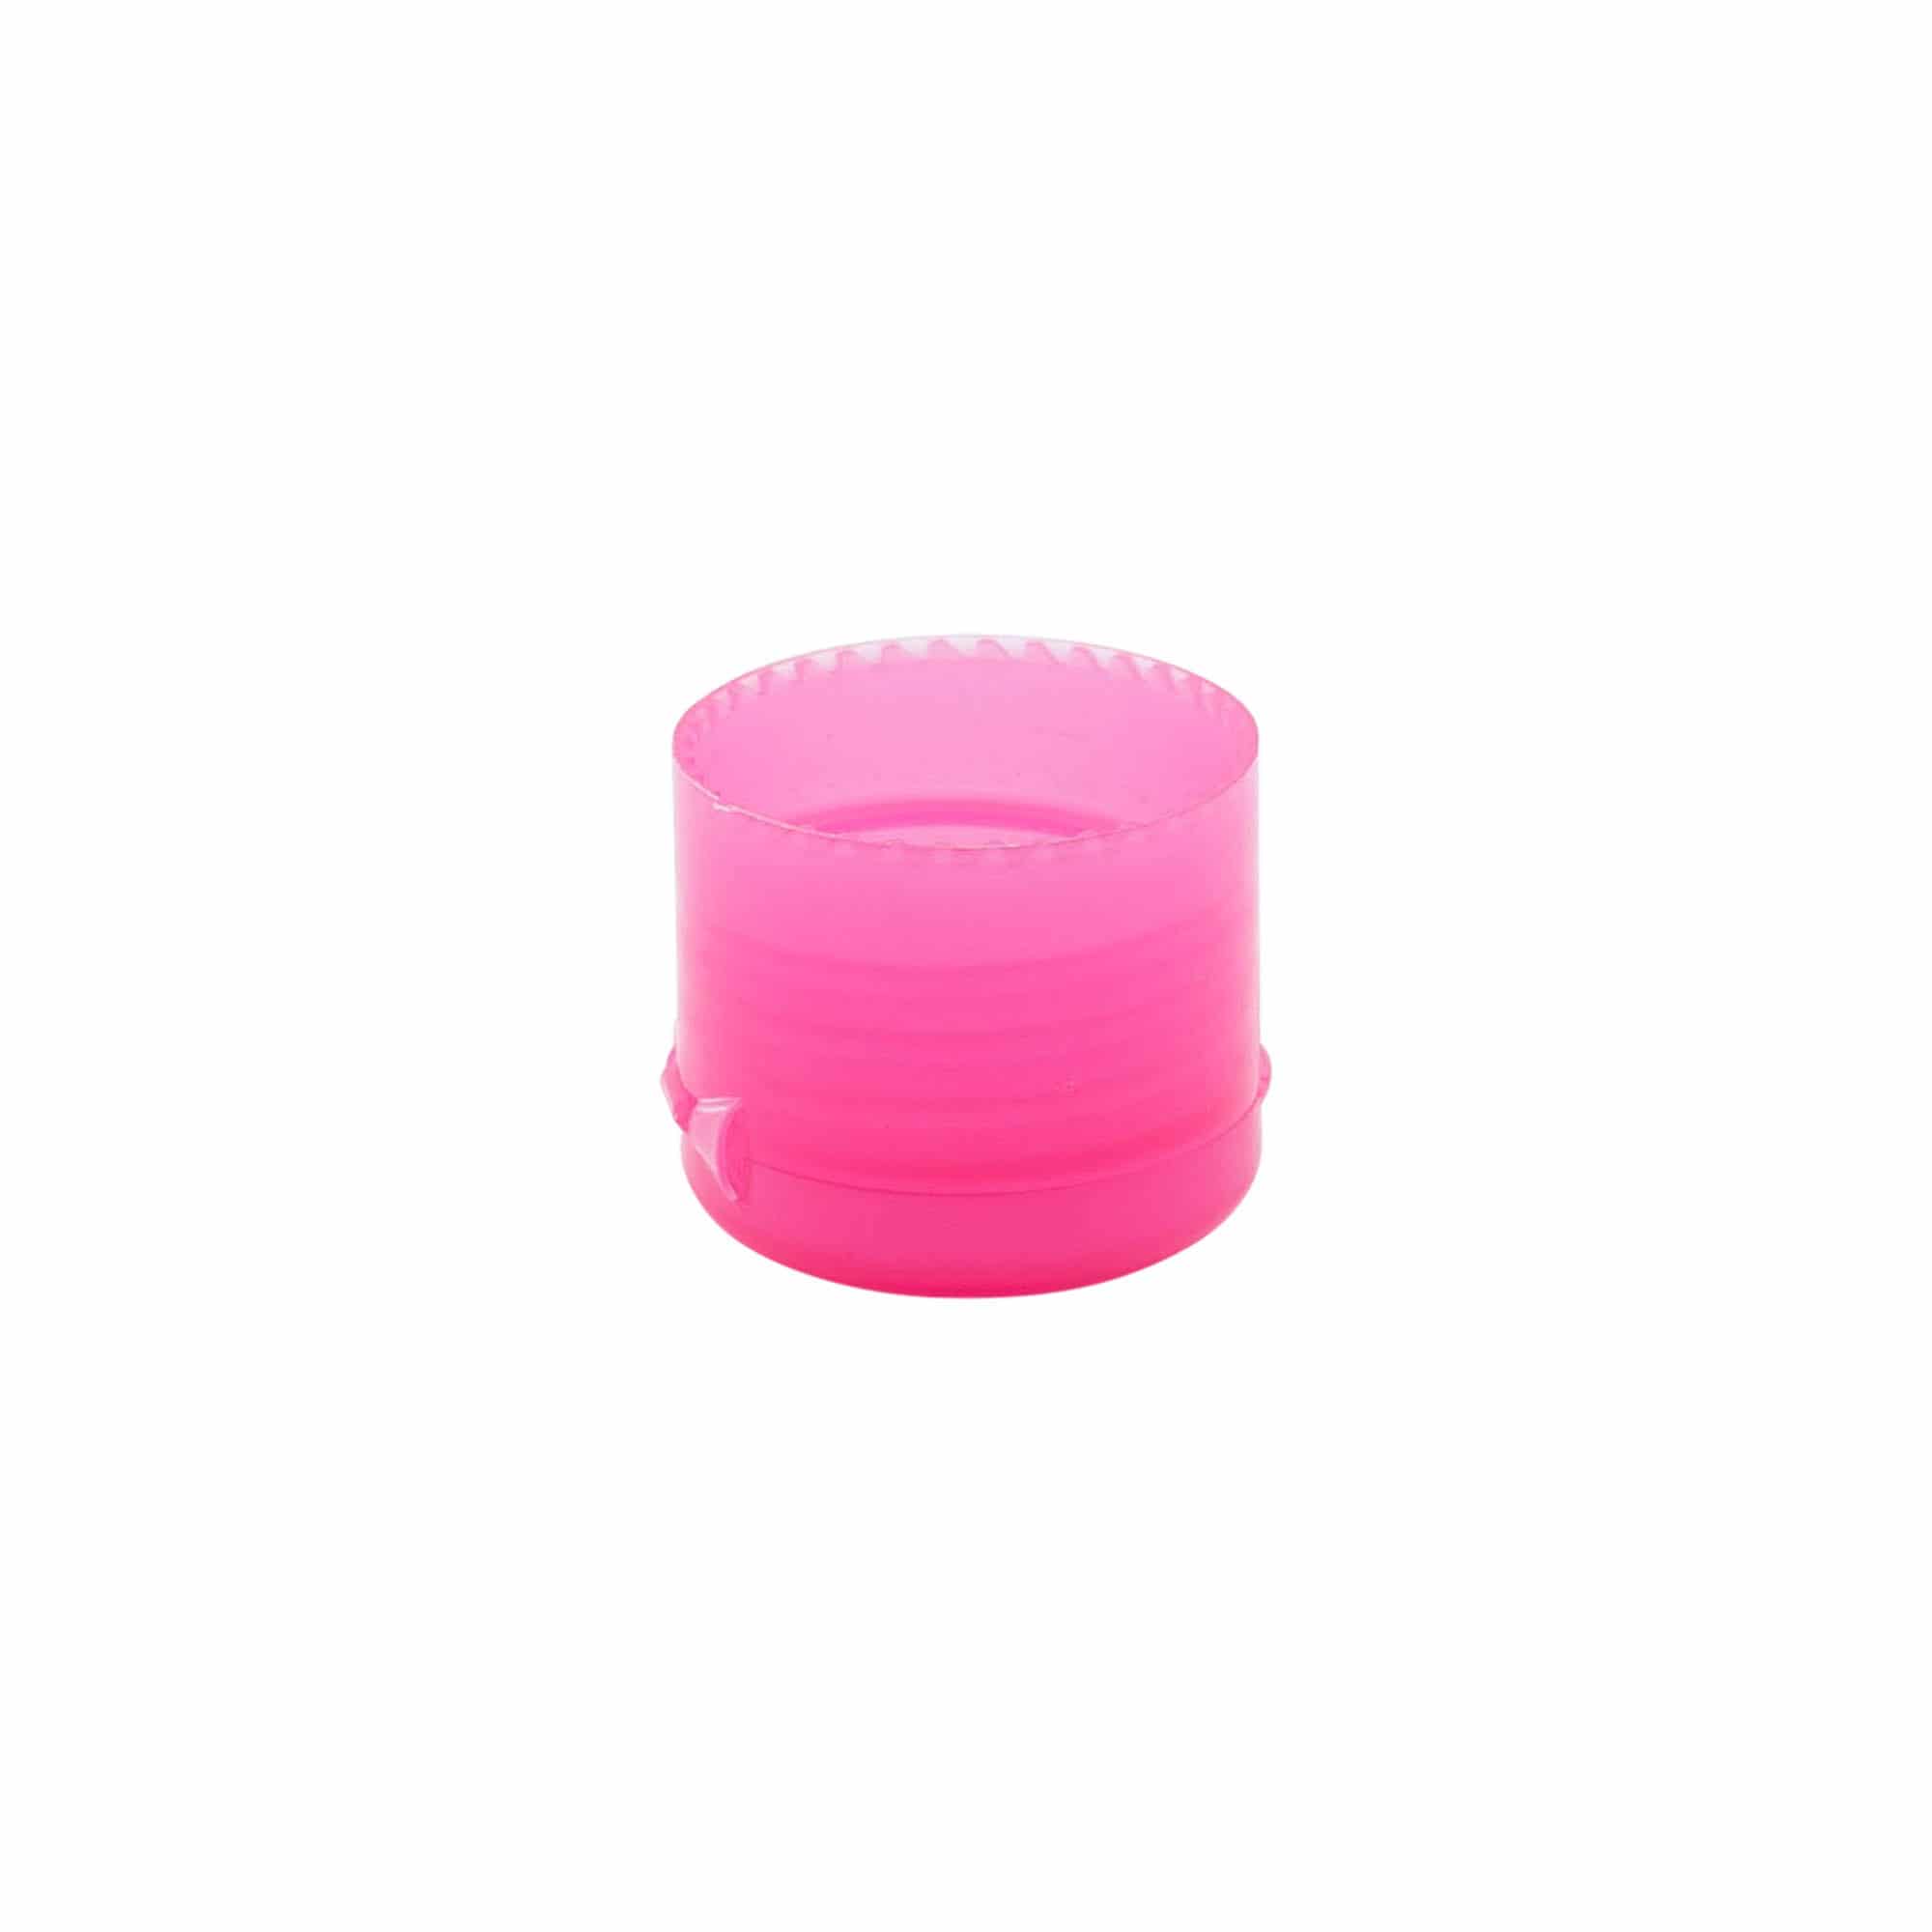 Schraubverschluss Klappscharnier, PP-Kunststoff, pink, für Mündung: GPI 24/410